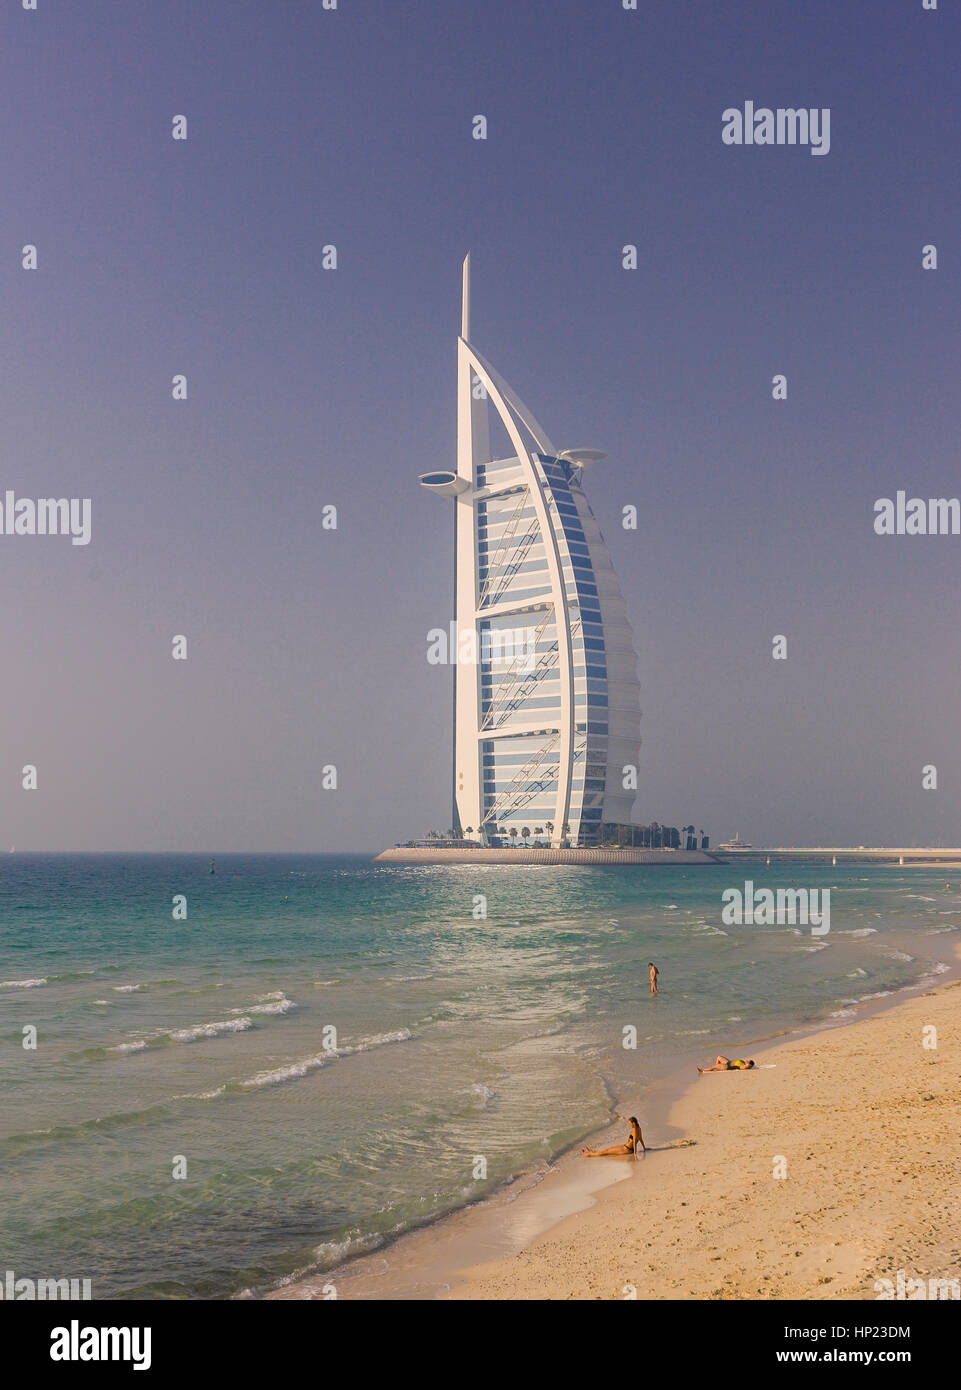 DUBAI, Emirati Arabi Uniti - il Burj Al Arab Hotel di lusso in Jumeirah, sulla costa del Golfo Persico. 320m-tall Burj Al Arab è un iconico simbolo visivo per Dubai. Esso si considera il primo al mondo a sette stelle. Foto Stock